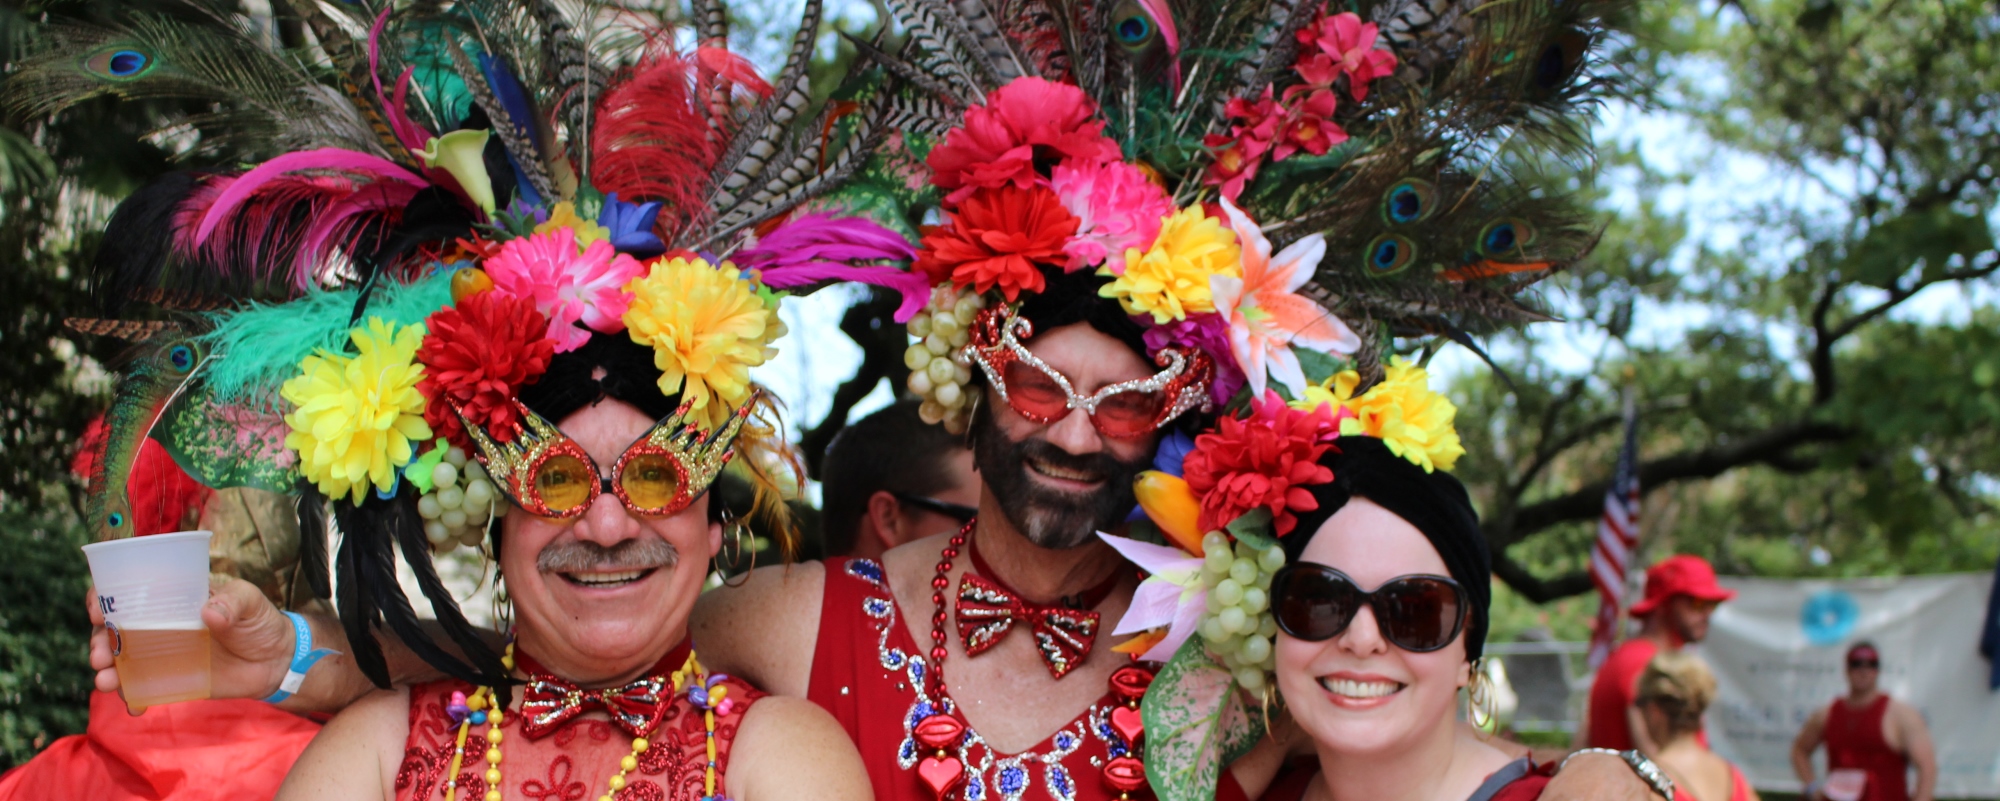 Carnaval de Nueva Orleans (EEUU) New Orleans